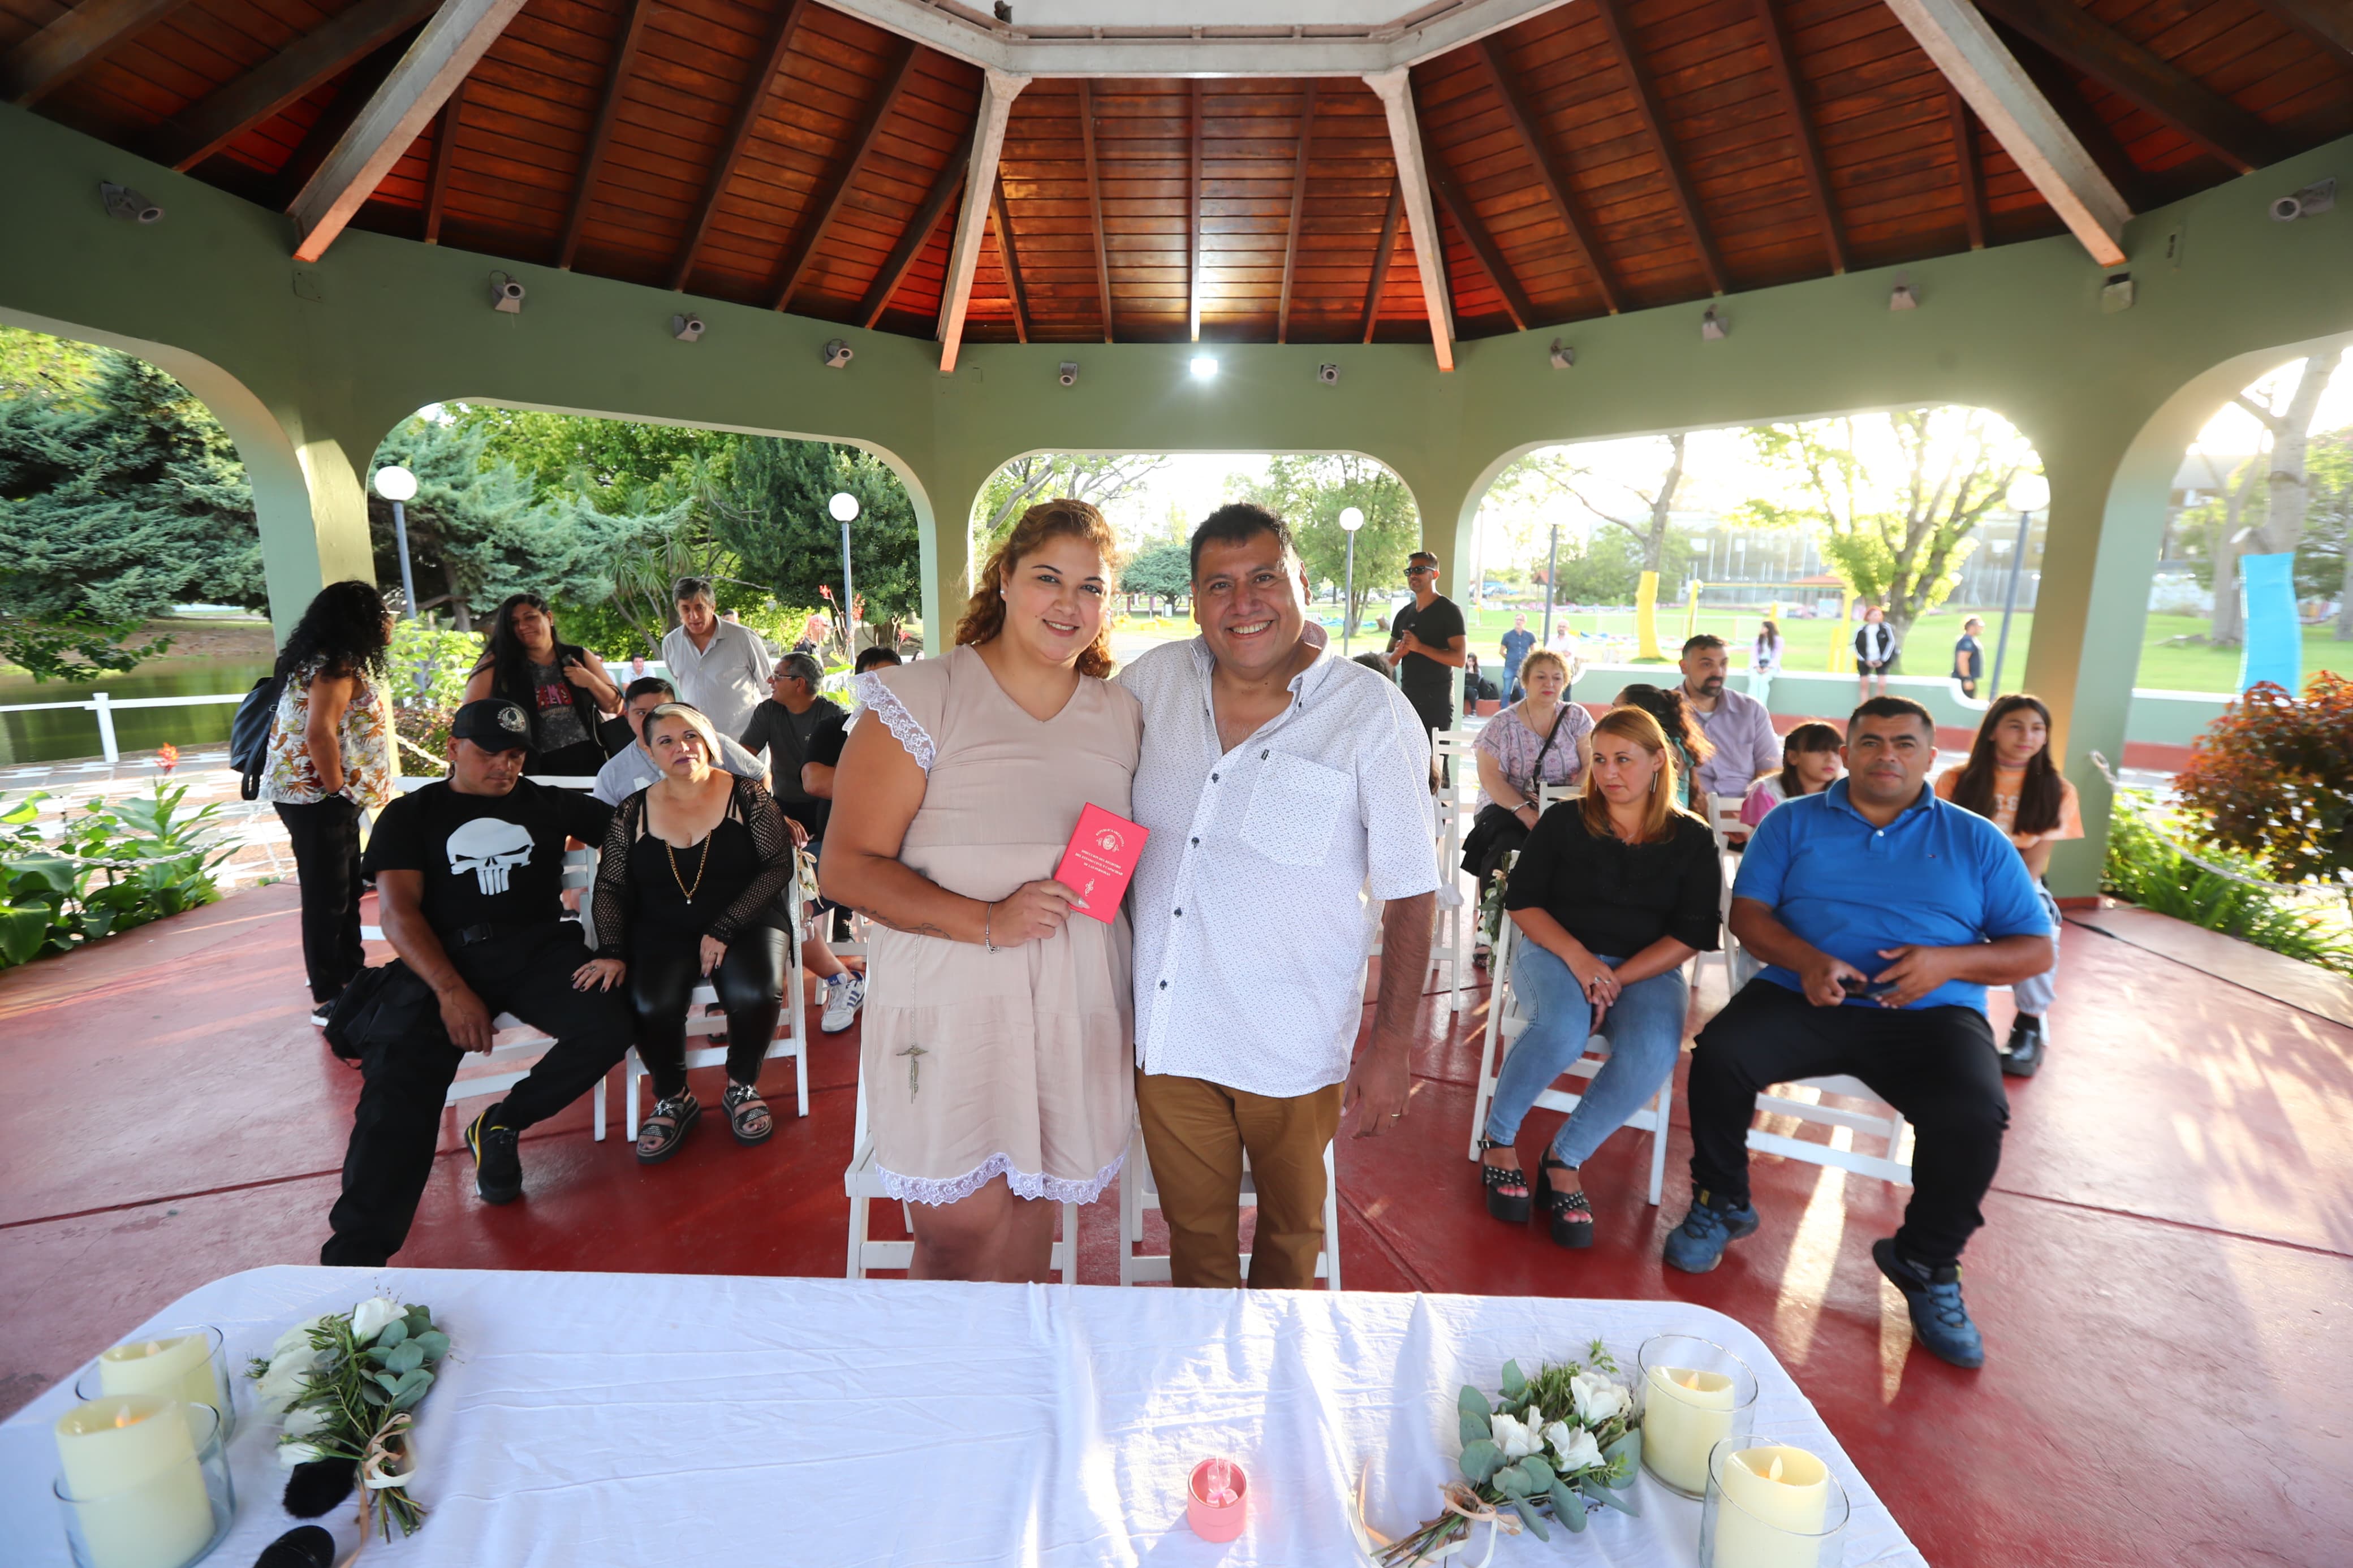 La Ciudad conmemora el Día de los Enamorados con la celebración de 14 casamientos al aire libre